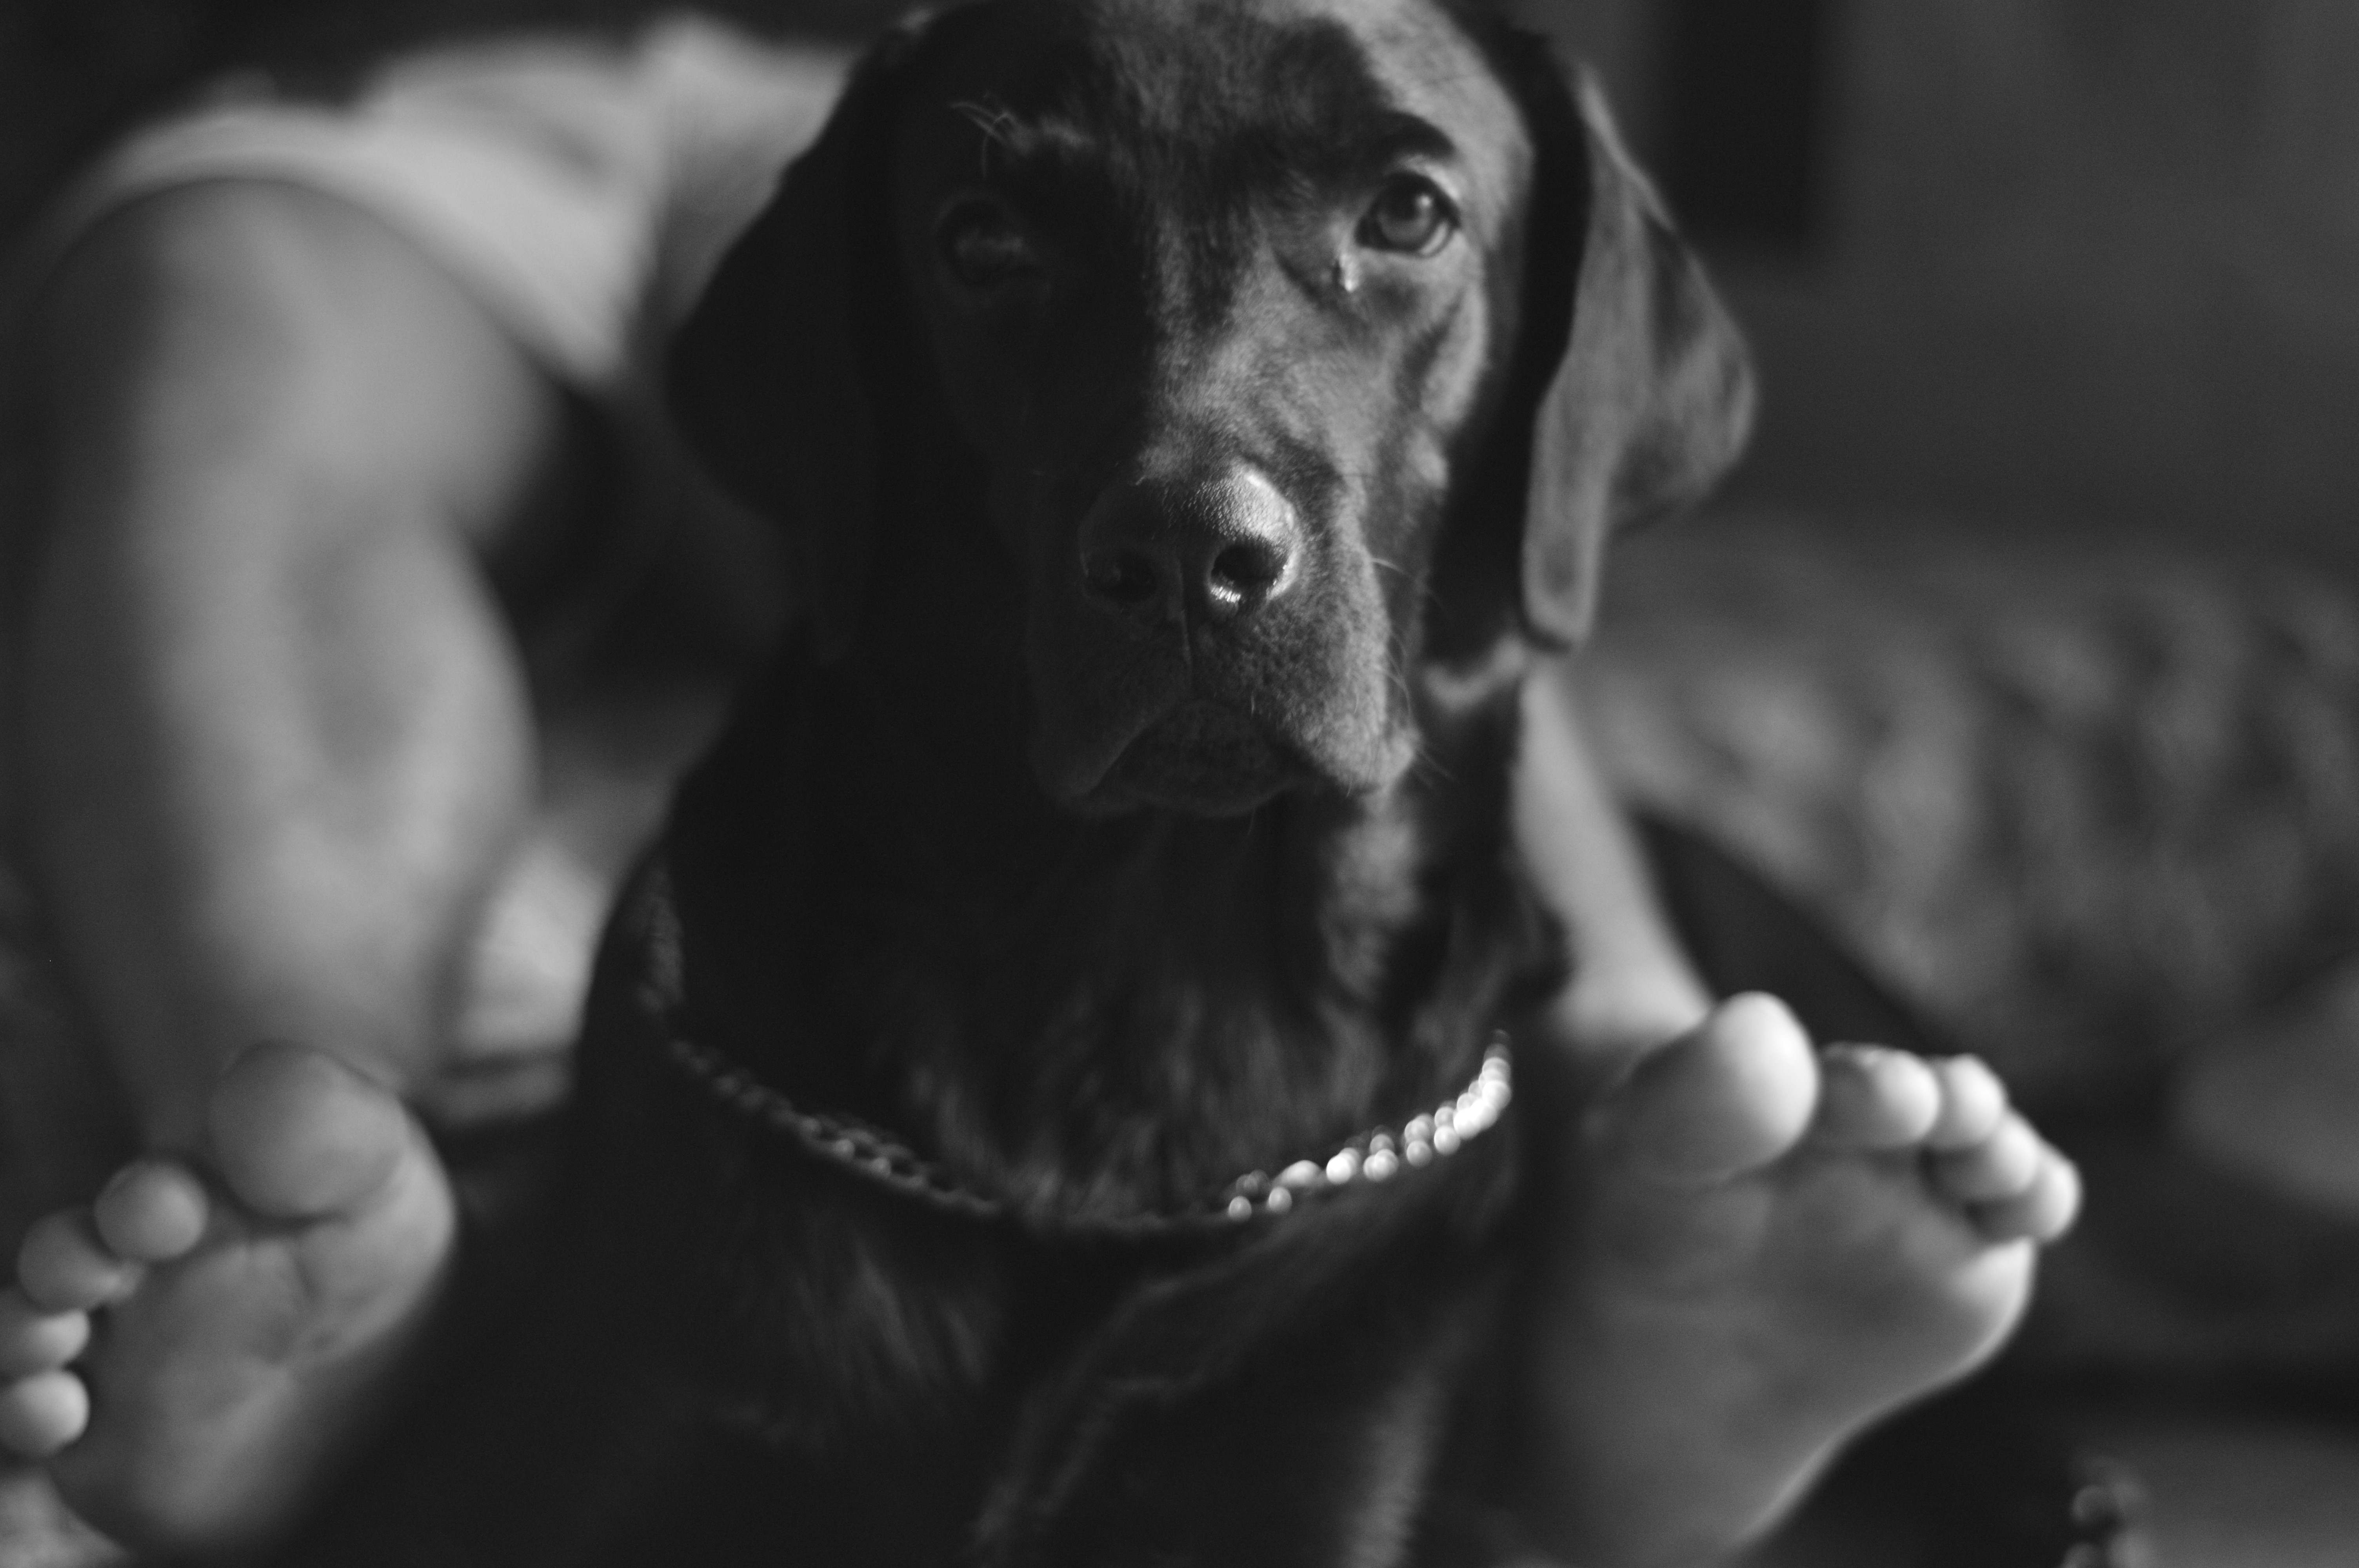 Dog Monochrome Photography Labrador Retriever Zeus 6016x4000